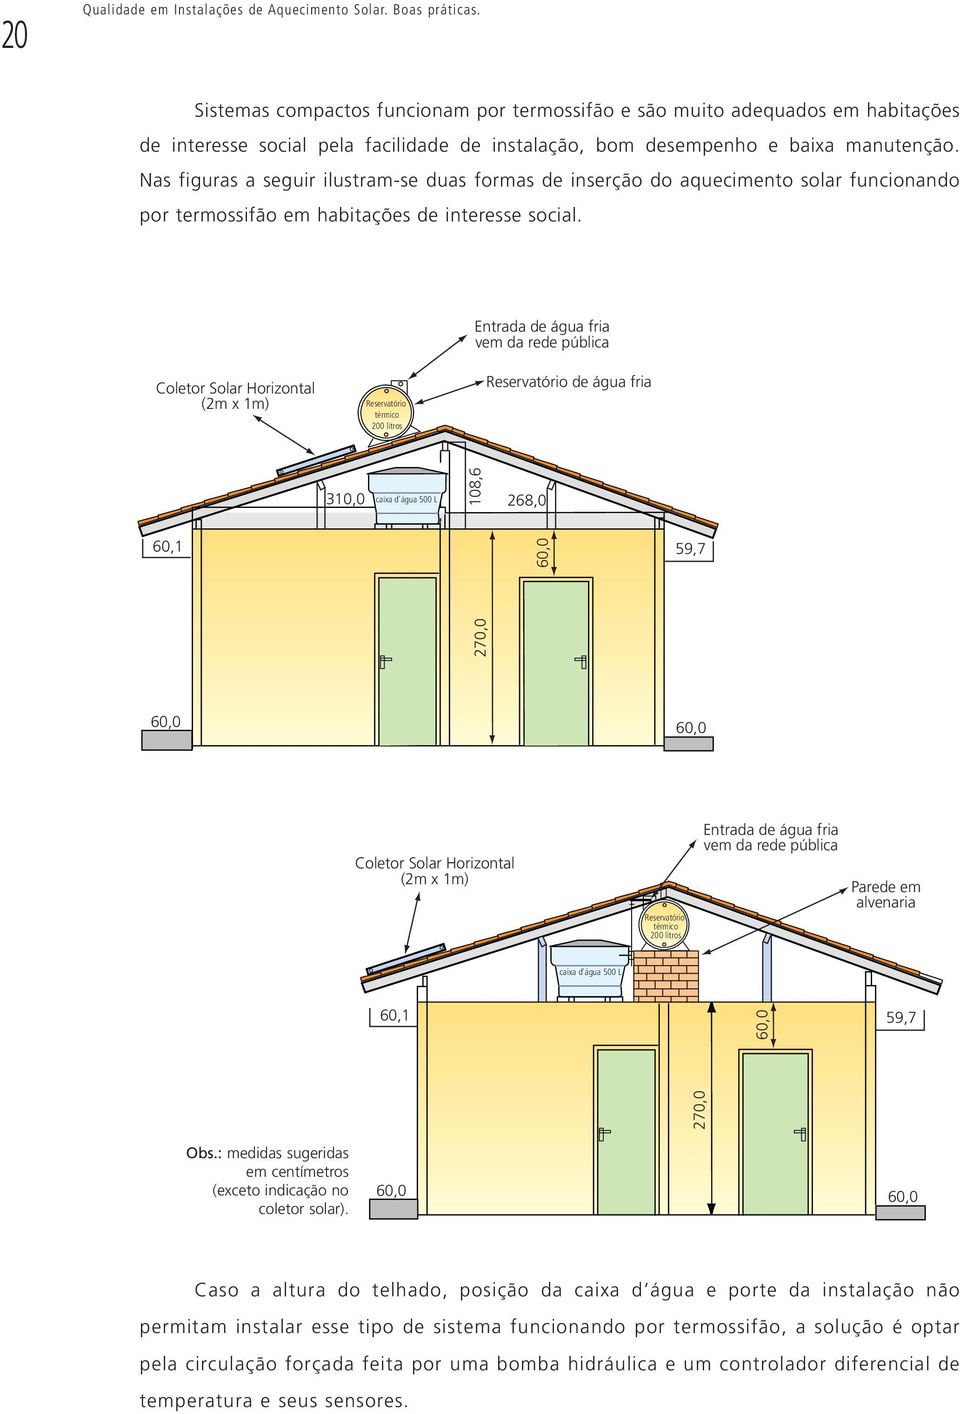 Nas figuras a seguir ilustram-se duas formas de inserção do aquecimento solar funcionando por termossifão em habitações de interesse social.